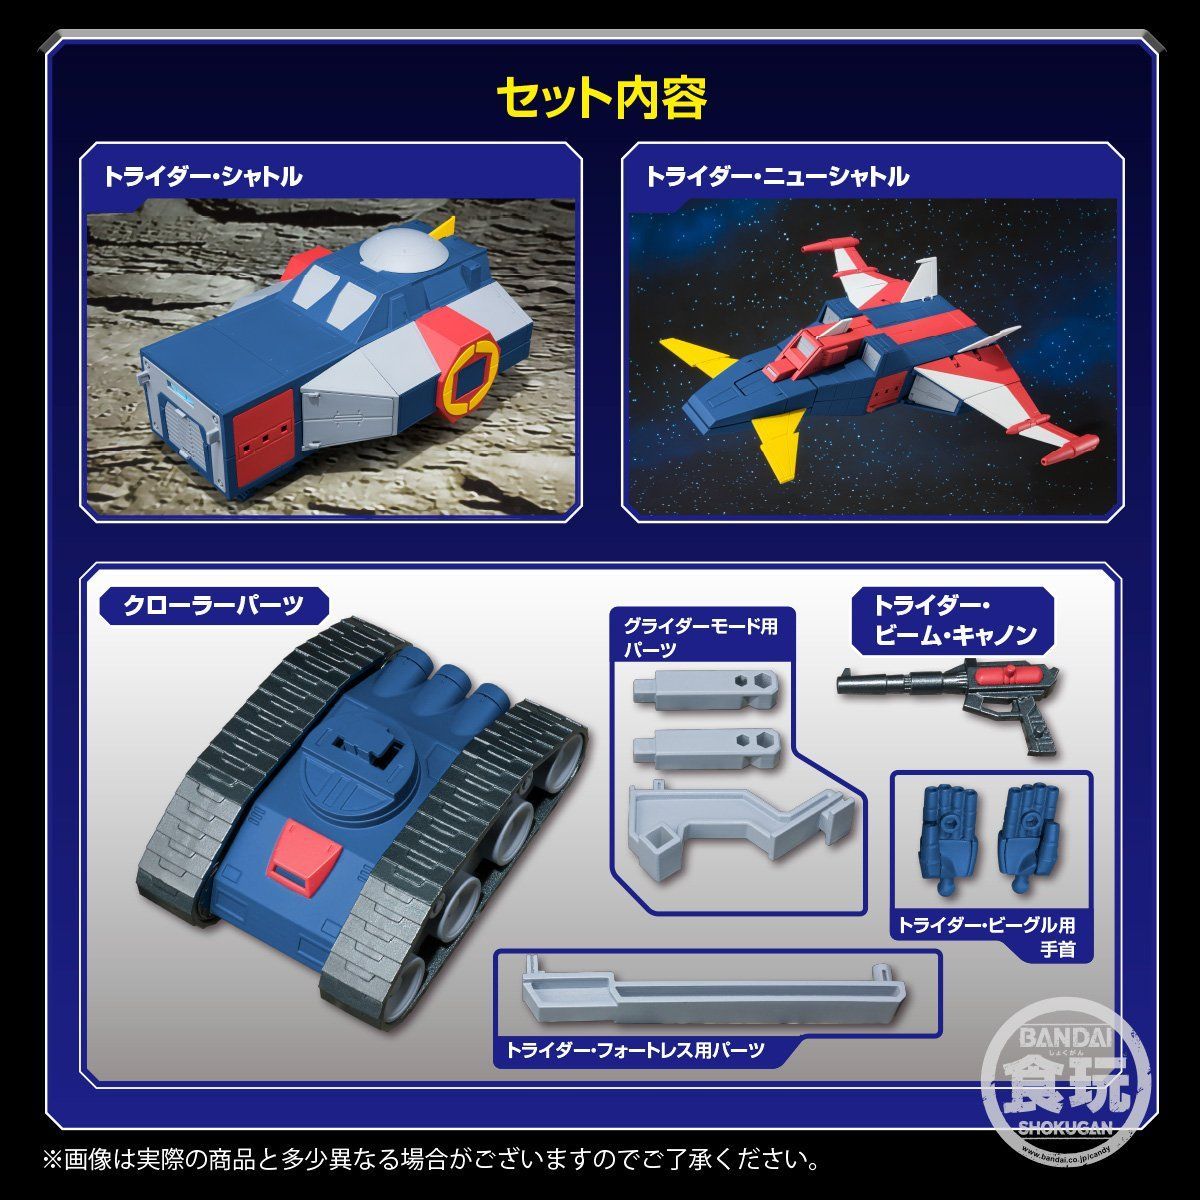 【食玩】スーパーミニプラ『無敵ロボ トライダーG7』3個入りBOX-013